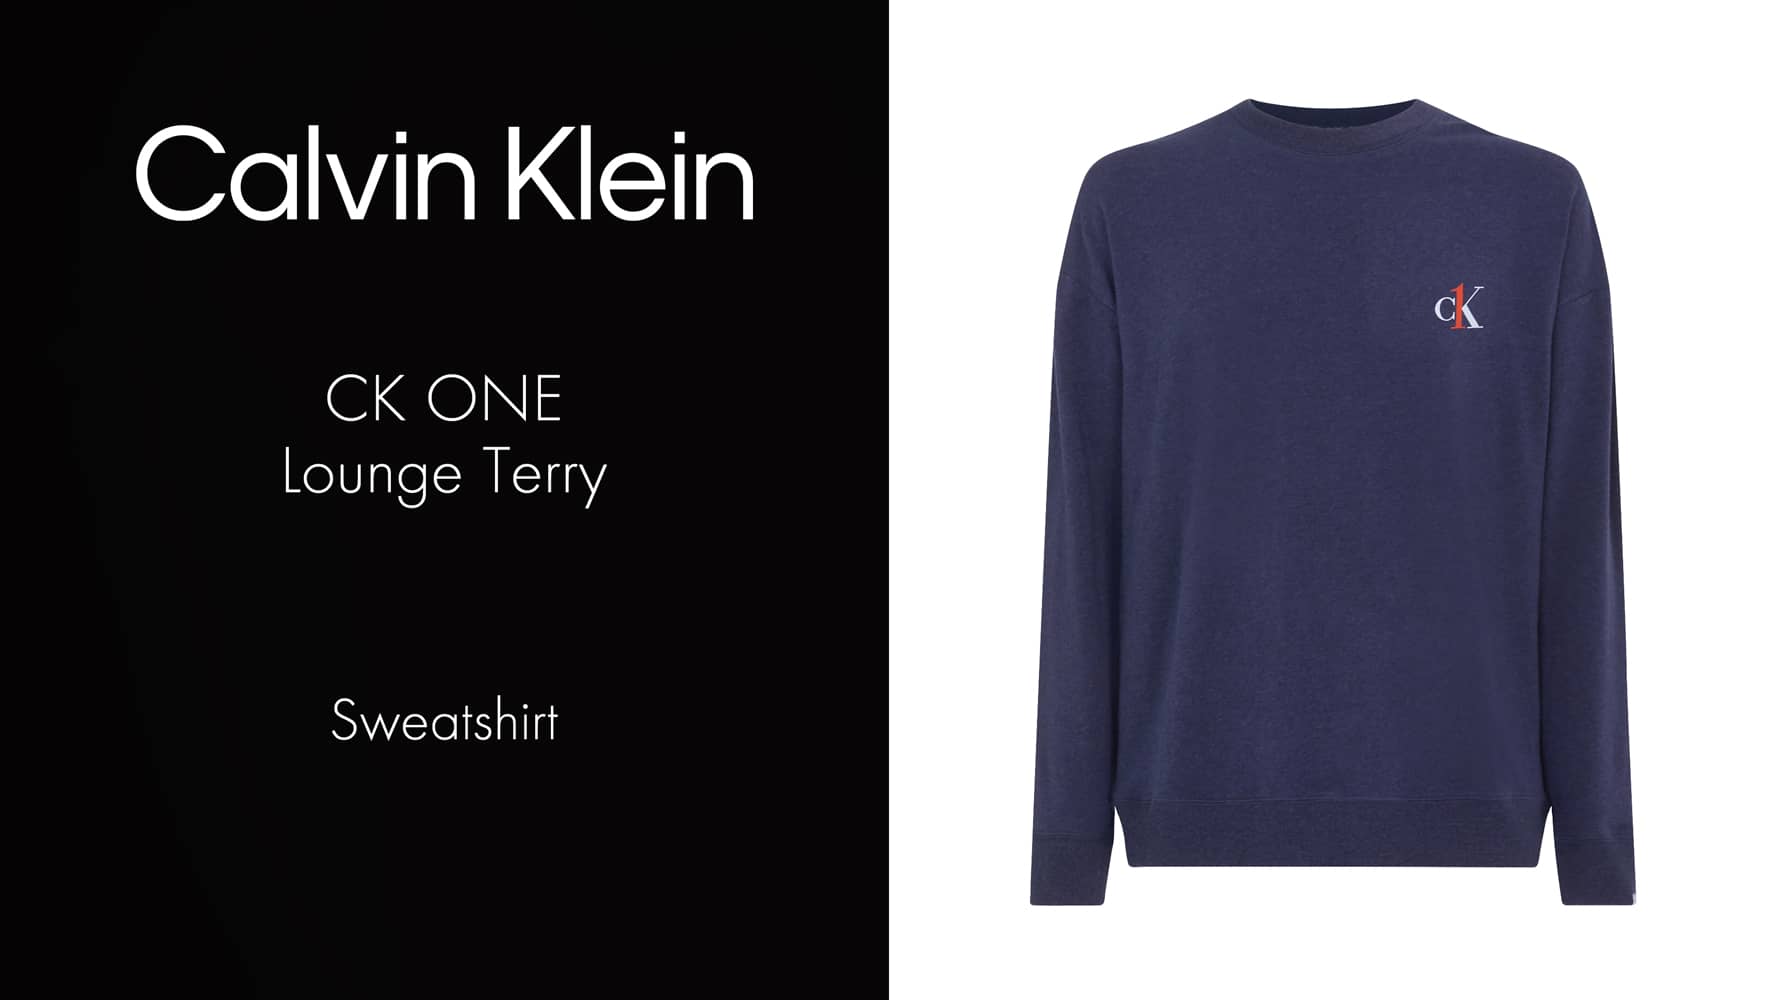 Sweatshirt - CK One Lounge Terry